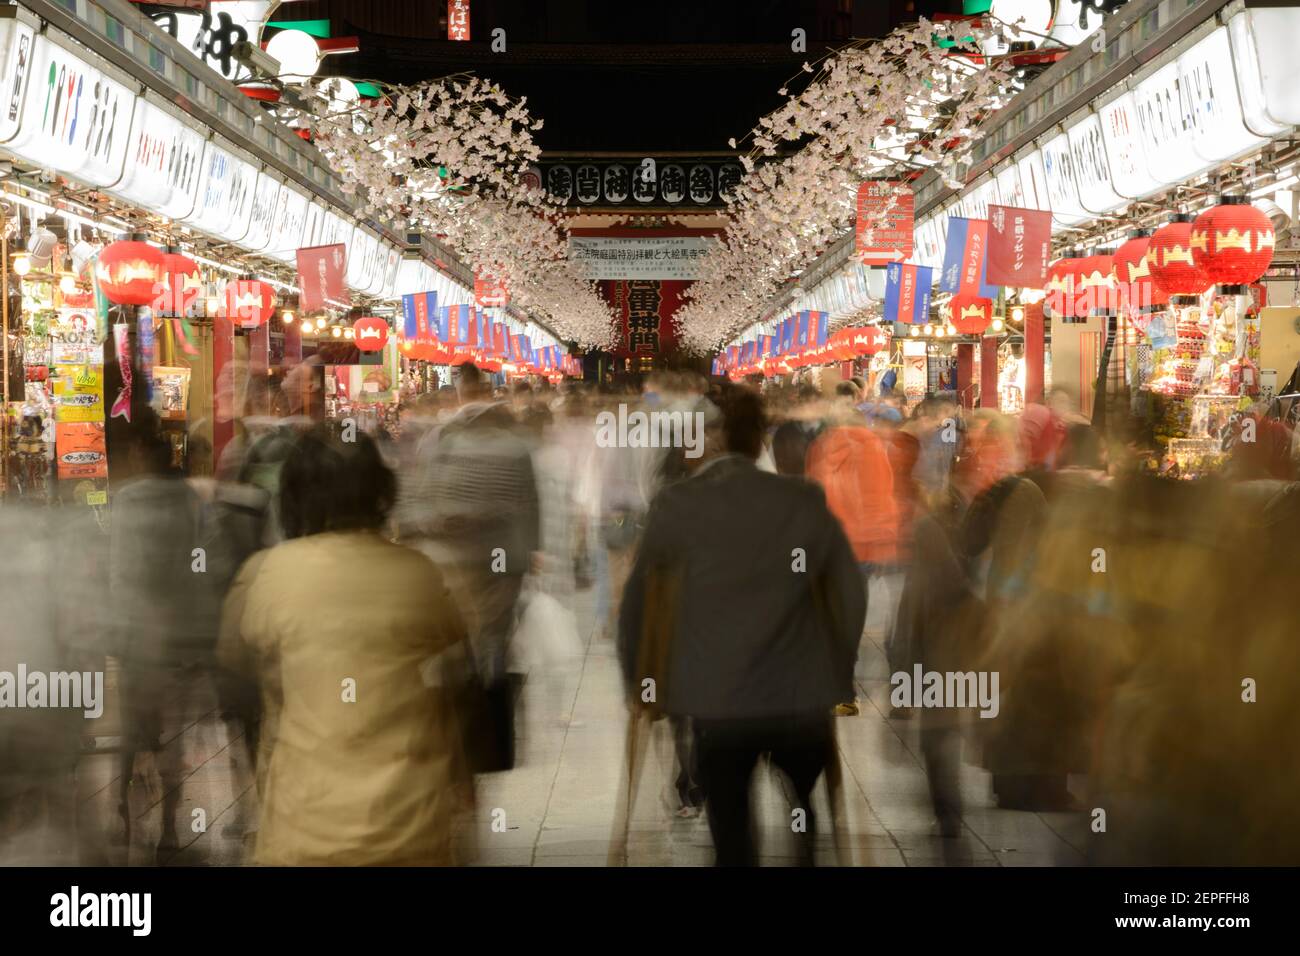 People walking through a street market at night in Asakusa, Tokyo, Japan. Stock Photo